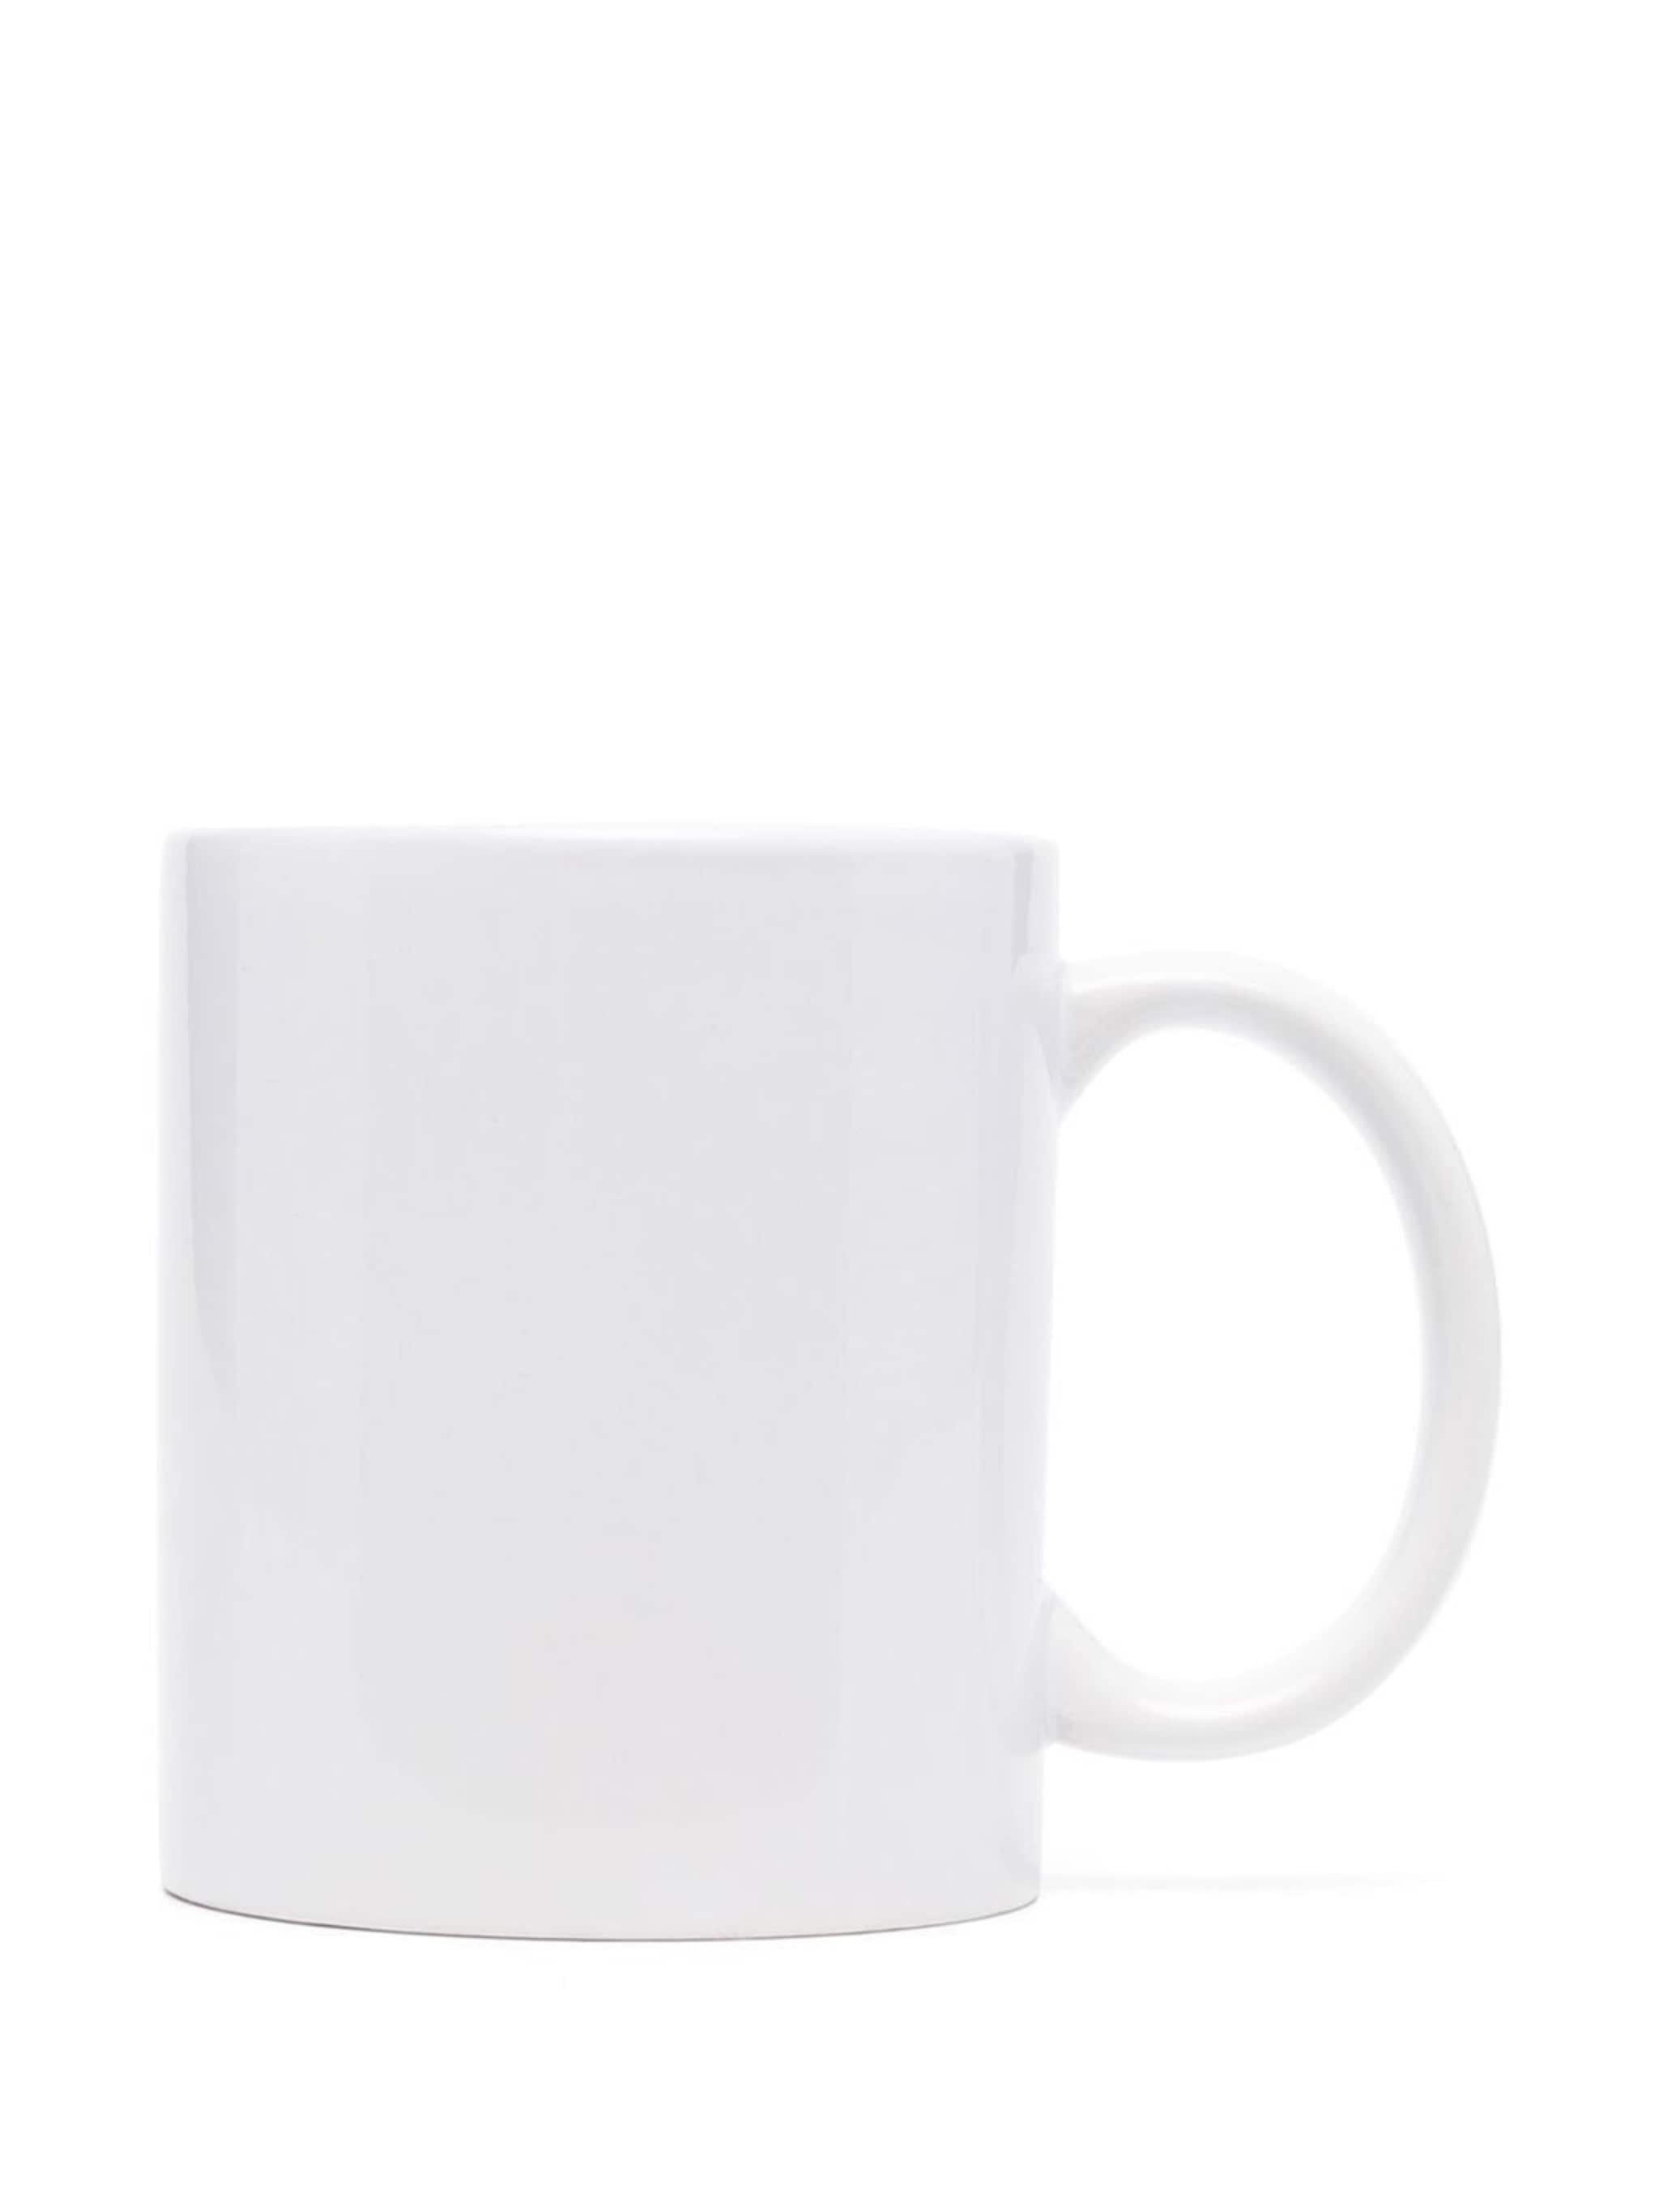 I Love PA ceramic mug - 2